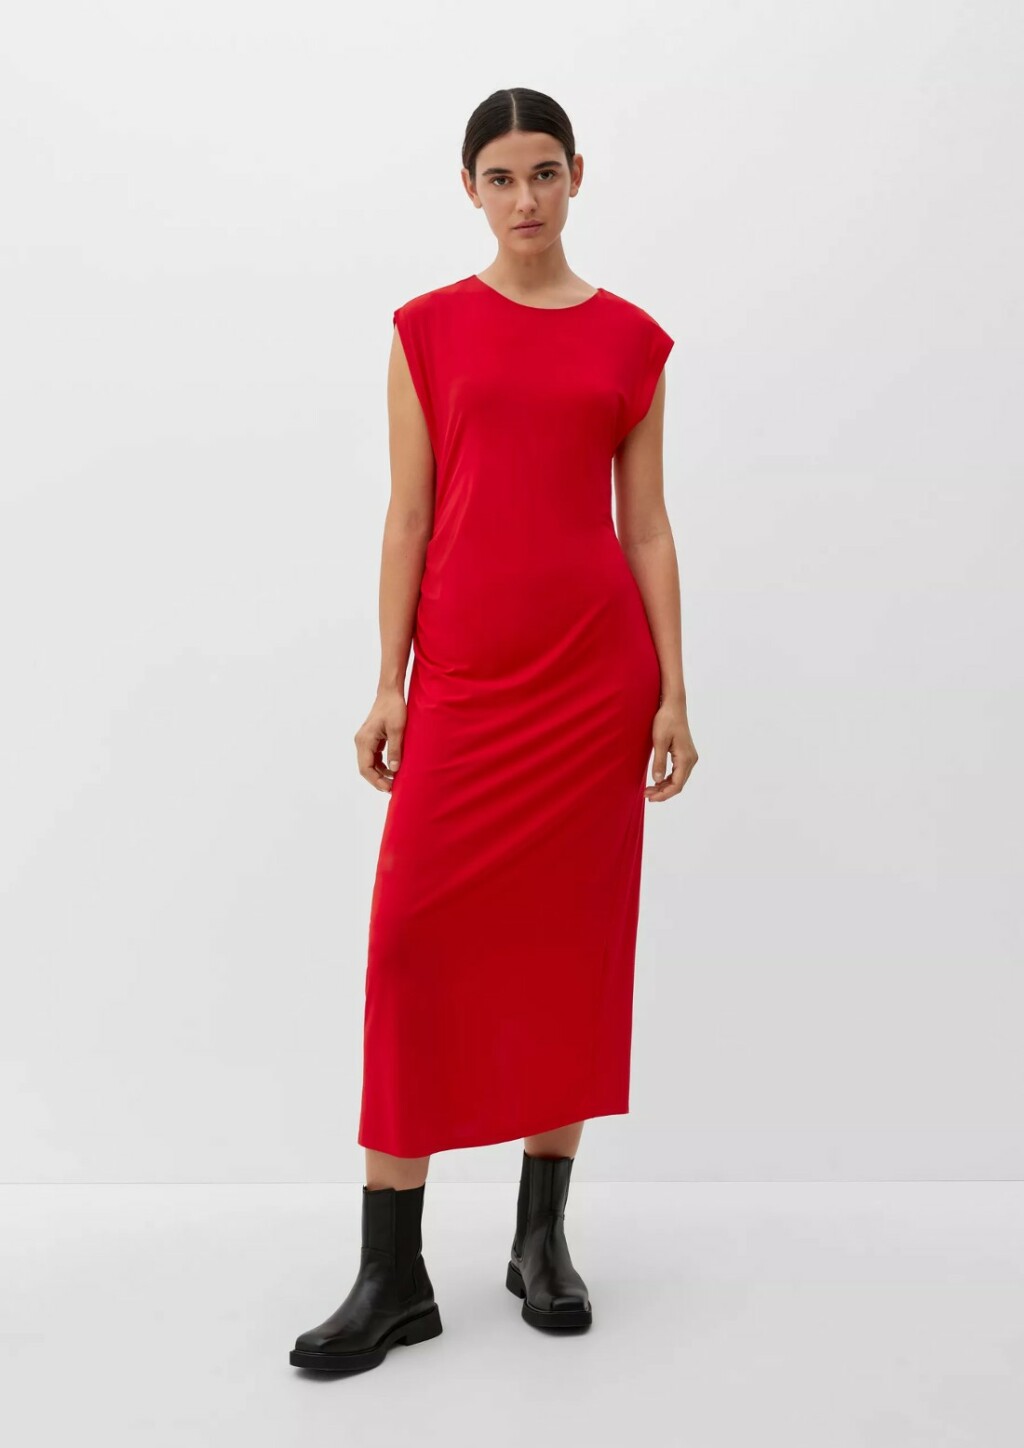 s.Oliver crvena haljina, 51,99 eura